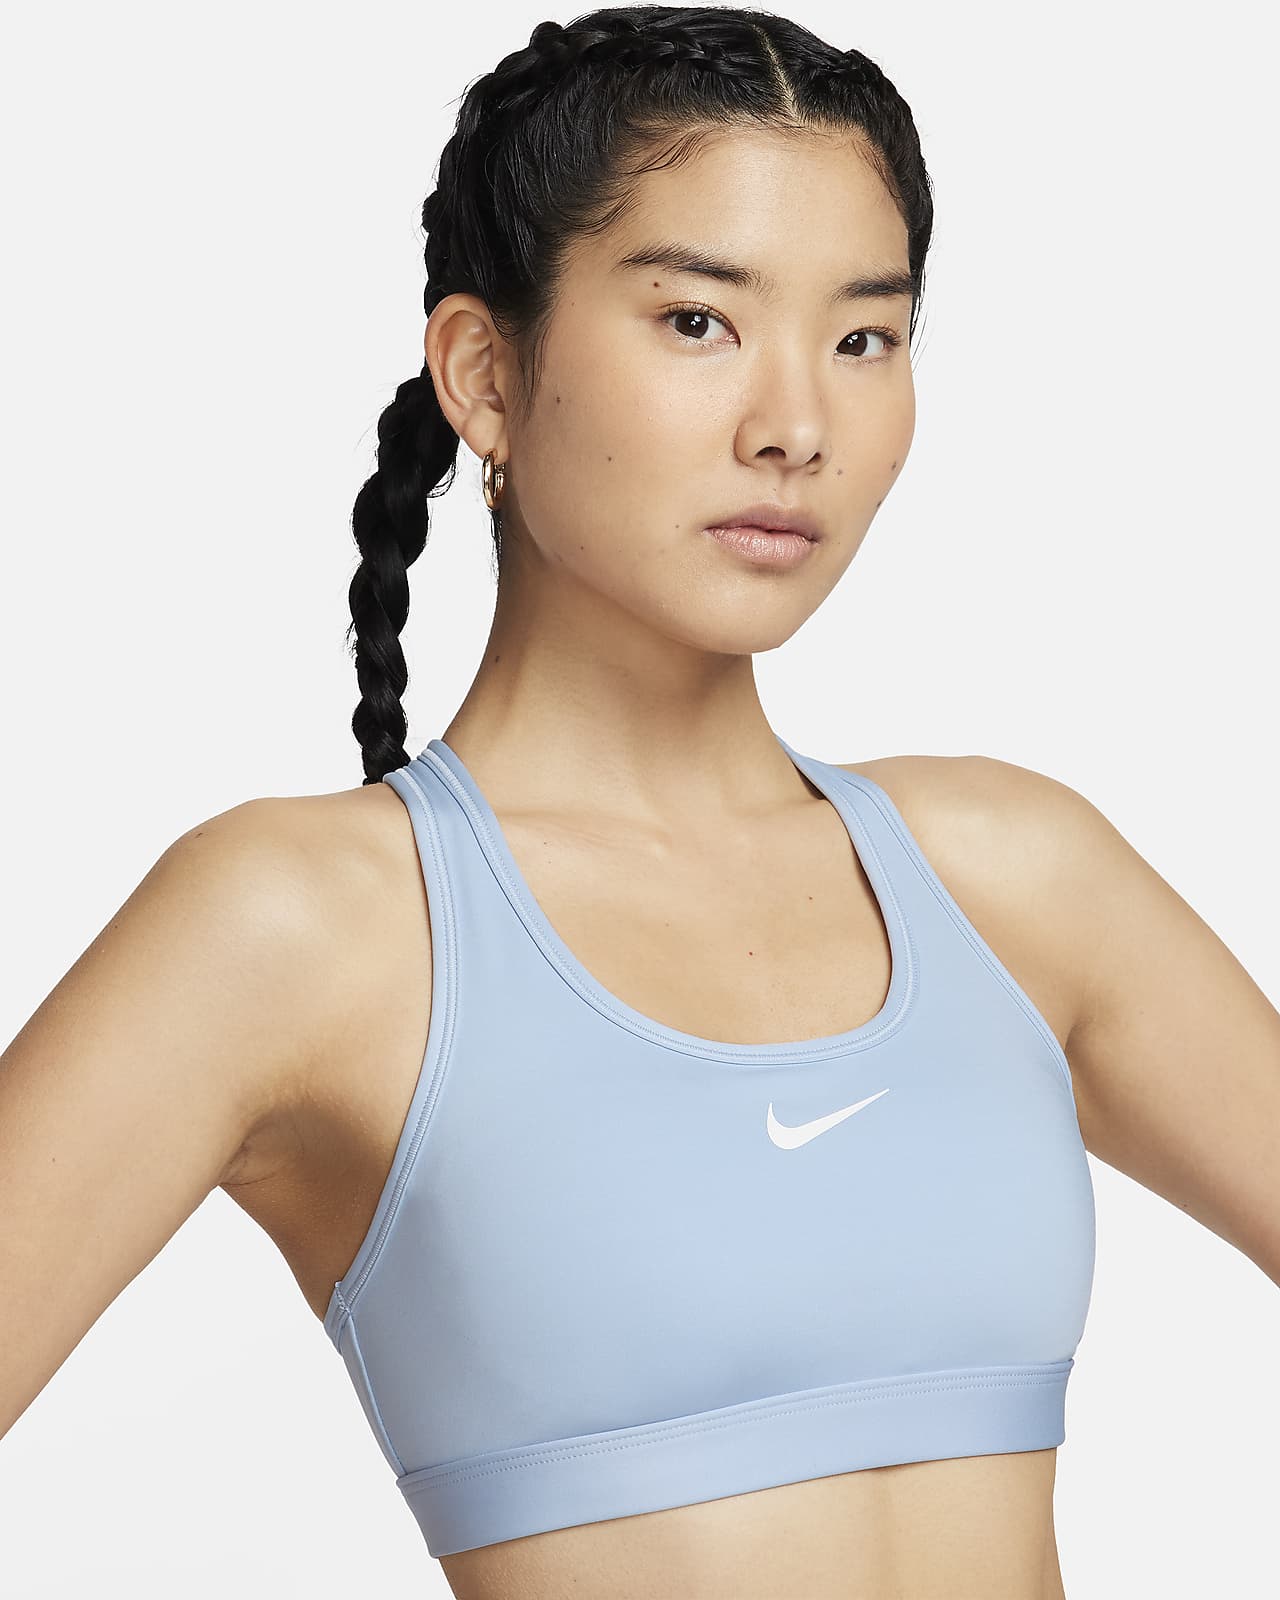 สปอร์ตบราผู้หญิงเสริมฟองน้ำ Nike Swoosh Medium Support